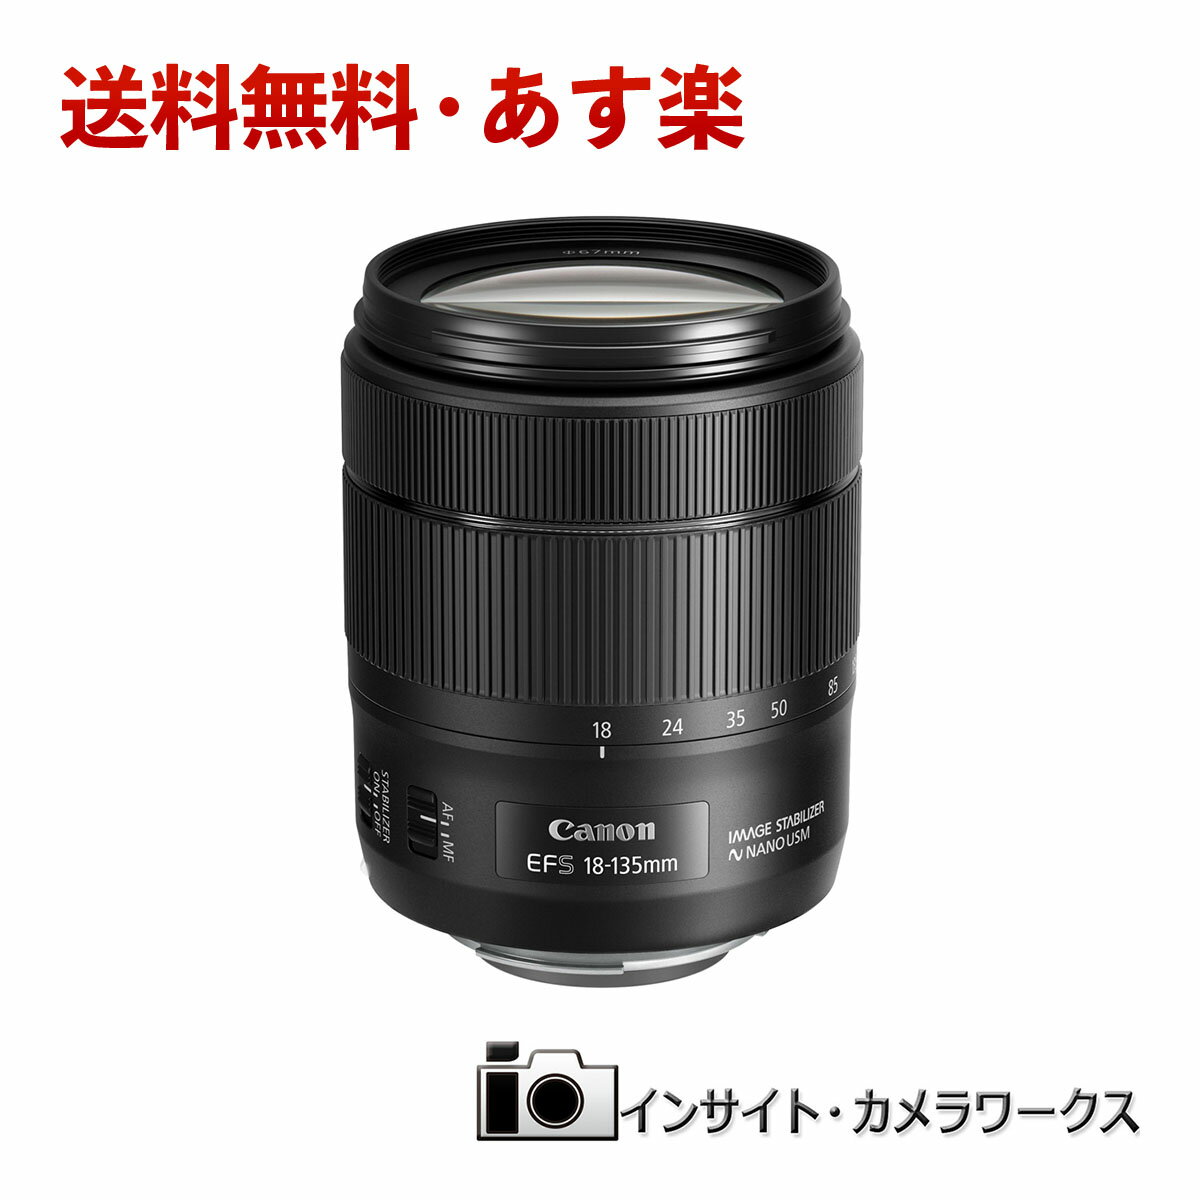 キヤノン EF-S18-135mm F3.5-5.6 IS USM 高倍率ズームレンズ Canon